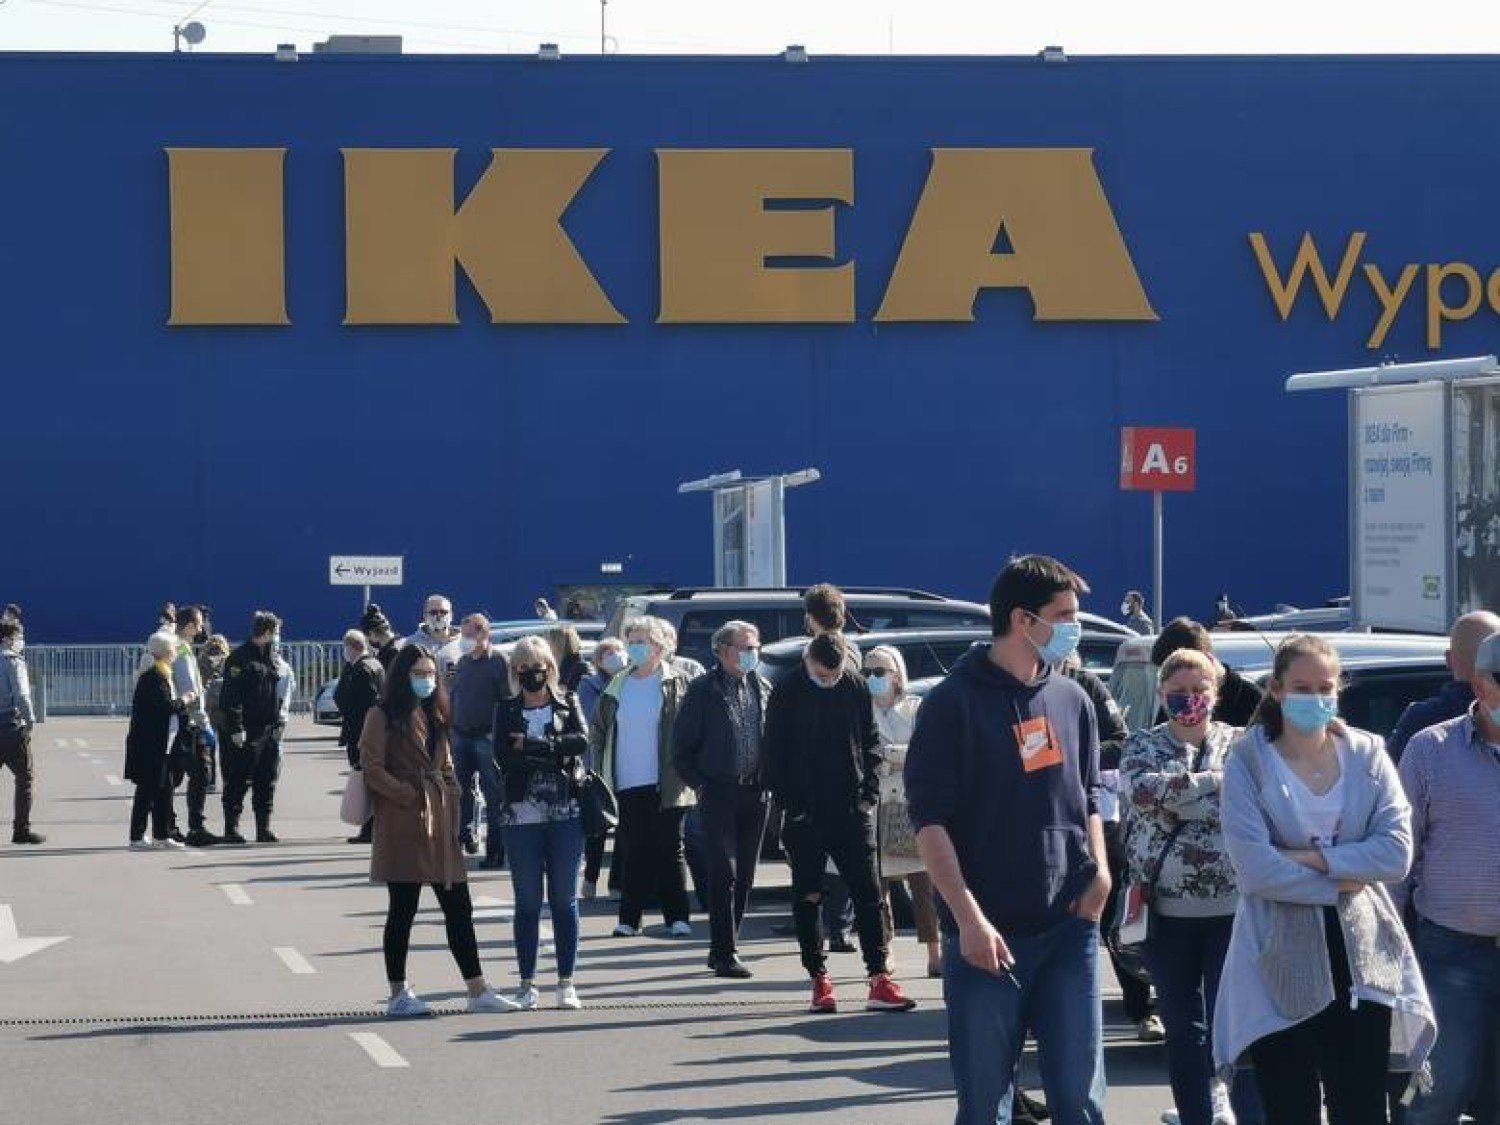 Ikea I Agata Meble Zamkniete To Efekt Rozporzadzenia Ograniczajacego Handel Z Powodu Koronawirusa Katowice Nasze Miasto